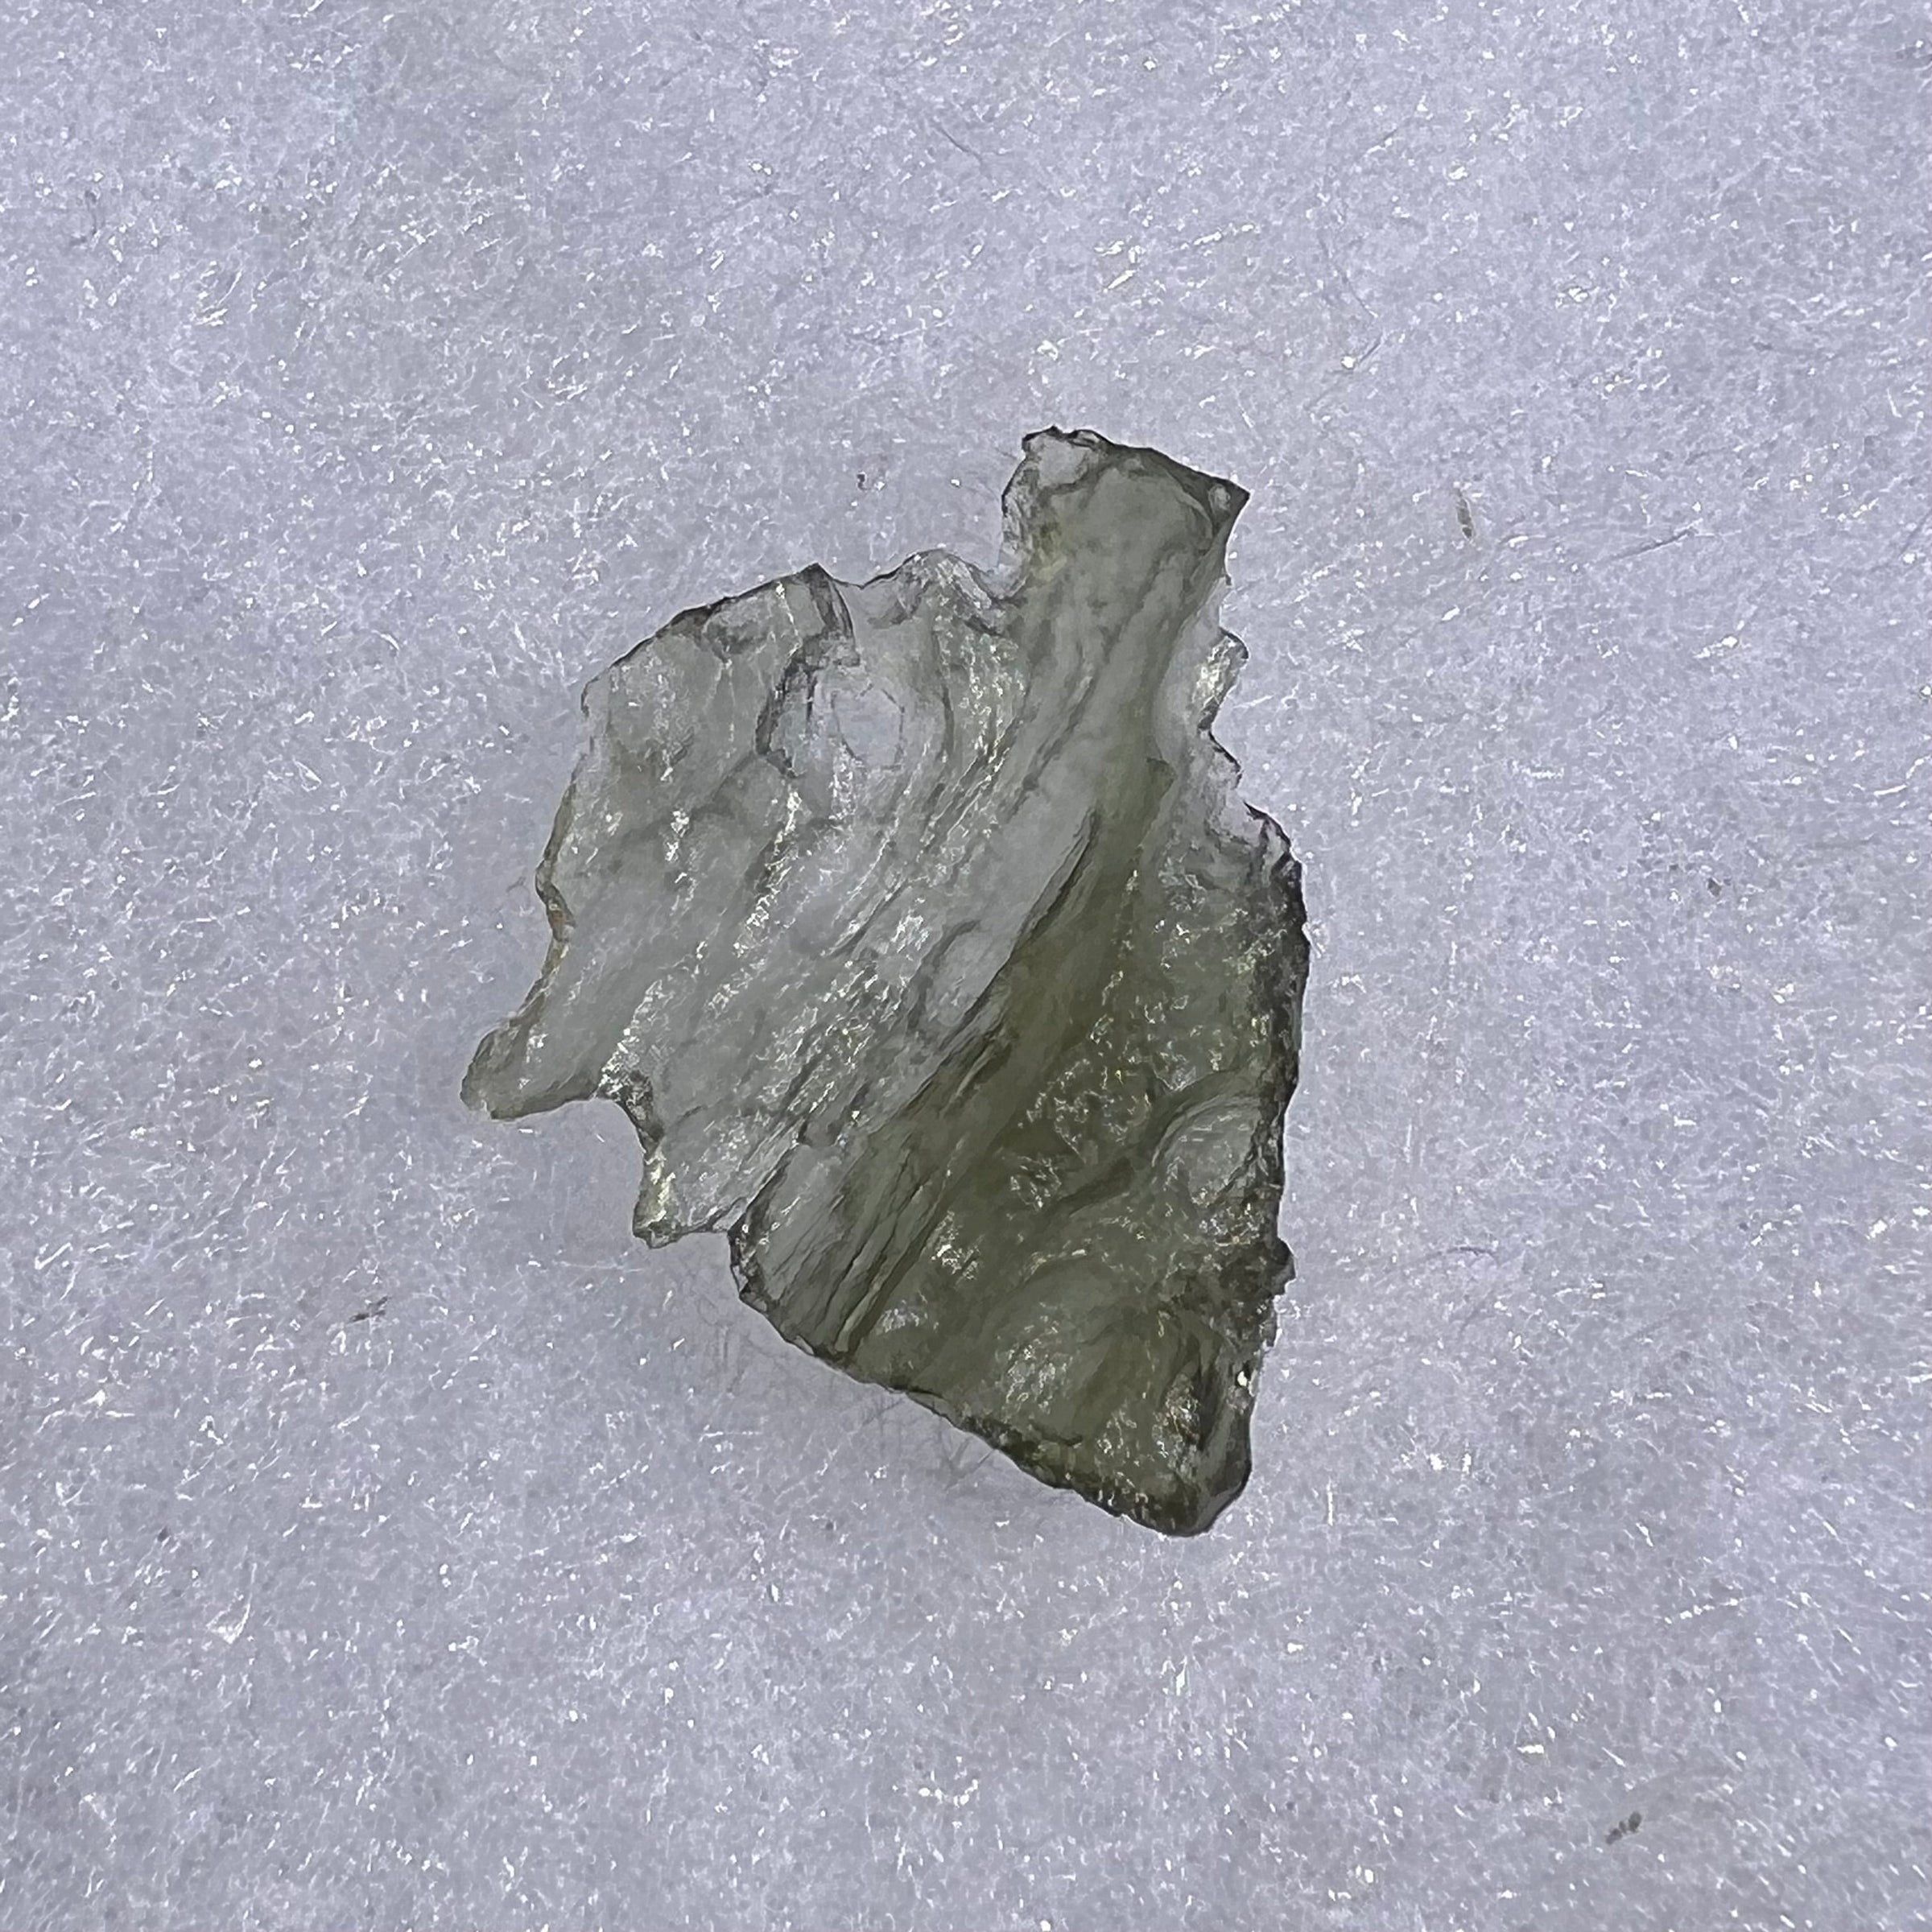 Besednice Moldavite 0.96 grams #401-Moldavite Life